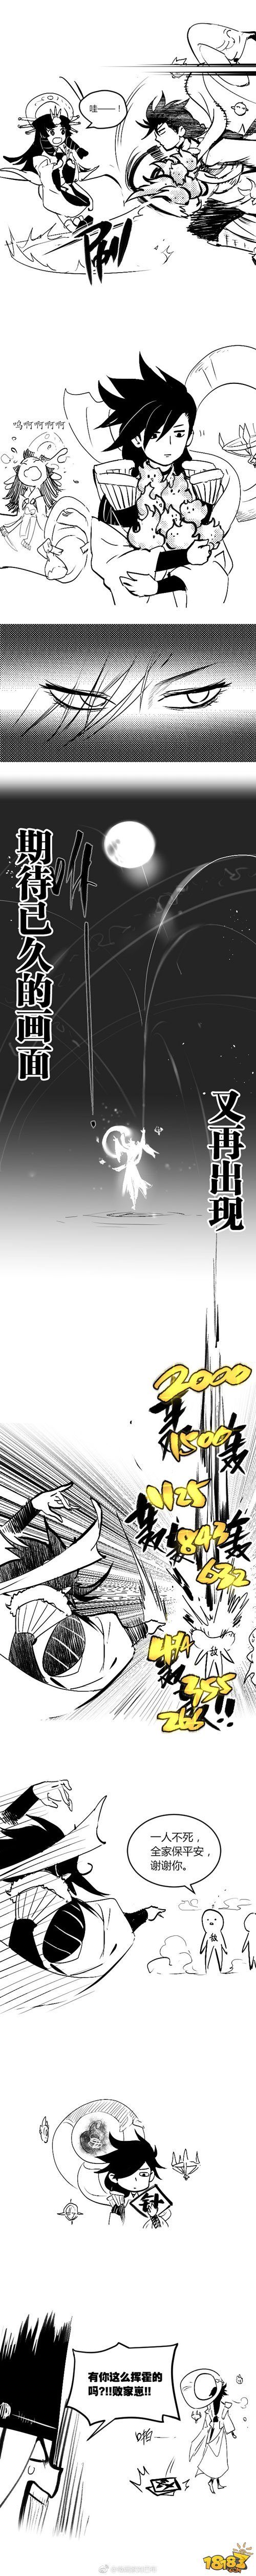 漫画家刘巴布作品:无限火力模式下的荒